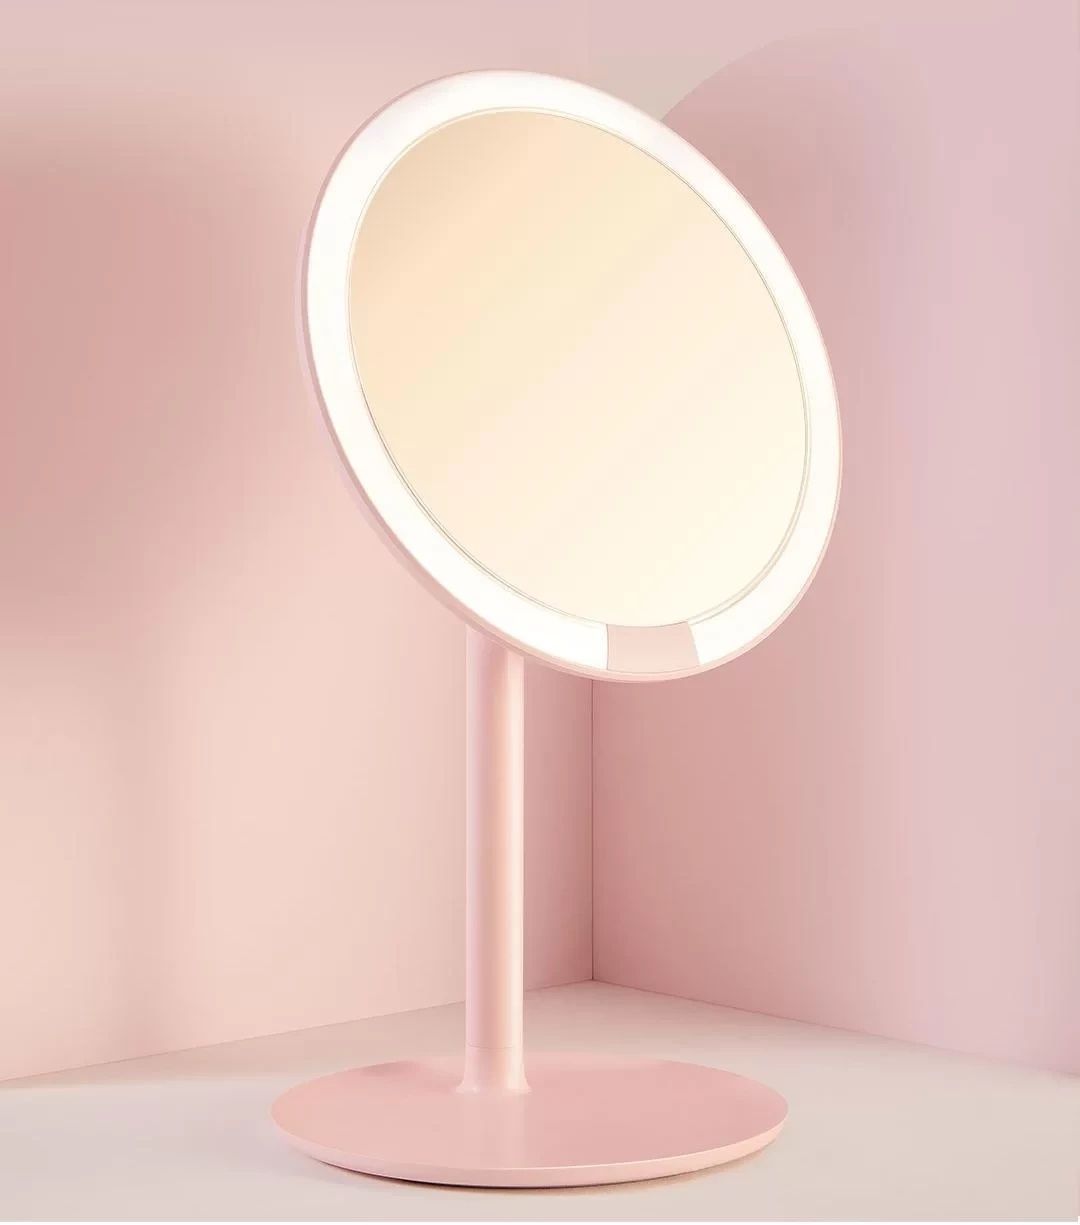 Новое! Профессиональное зеркало XIAOMI AMIRO. Розовое. Оригинал